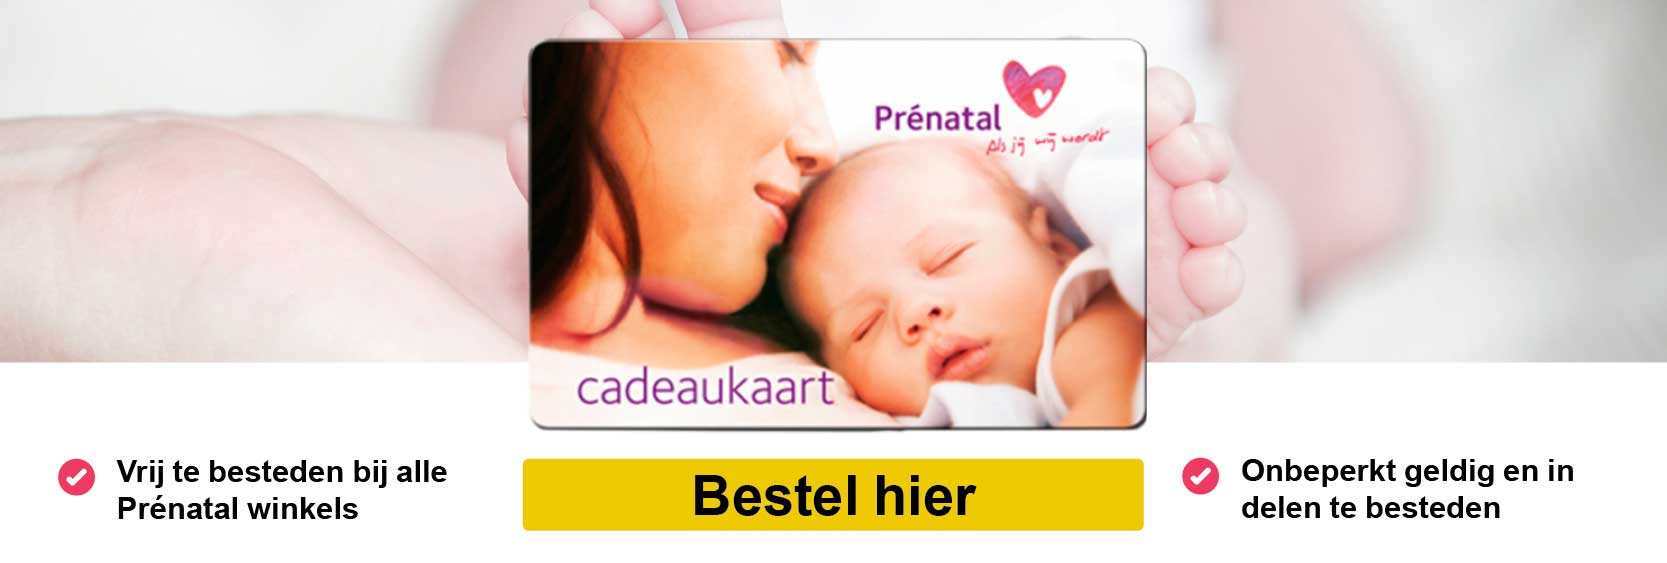 Prenatal_banner_def